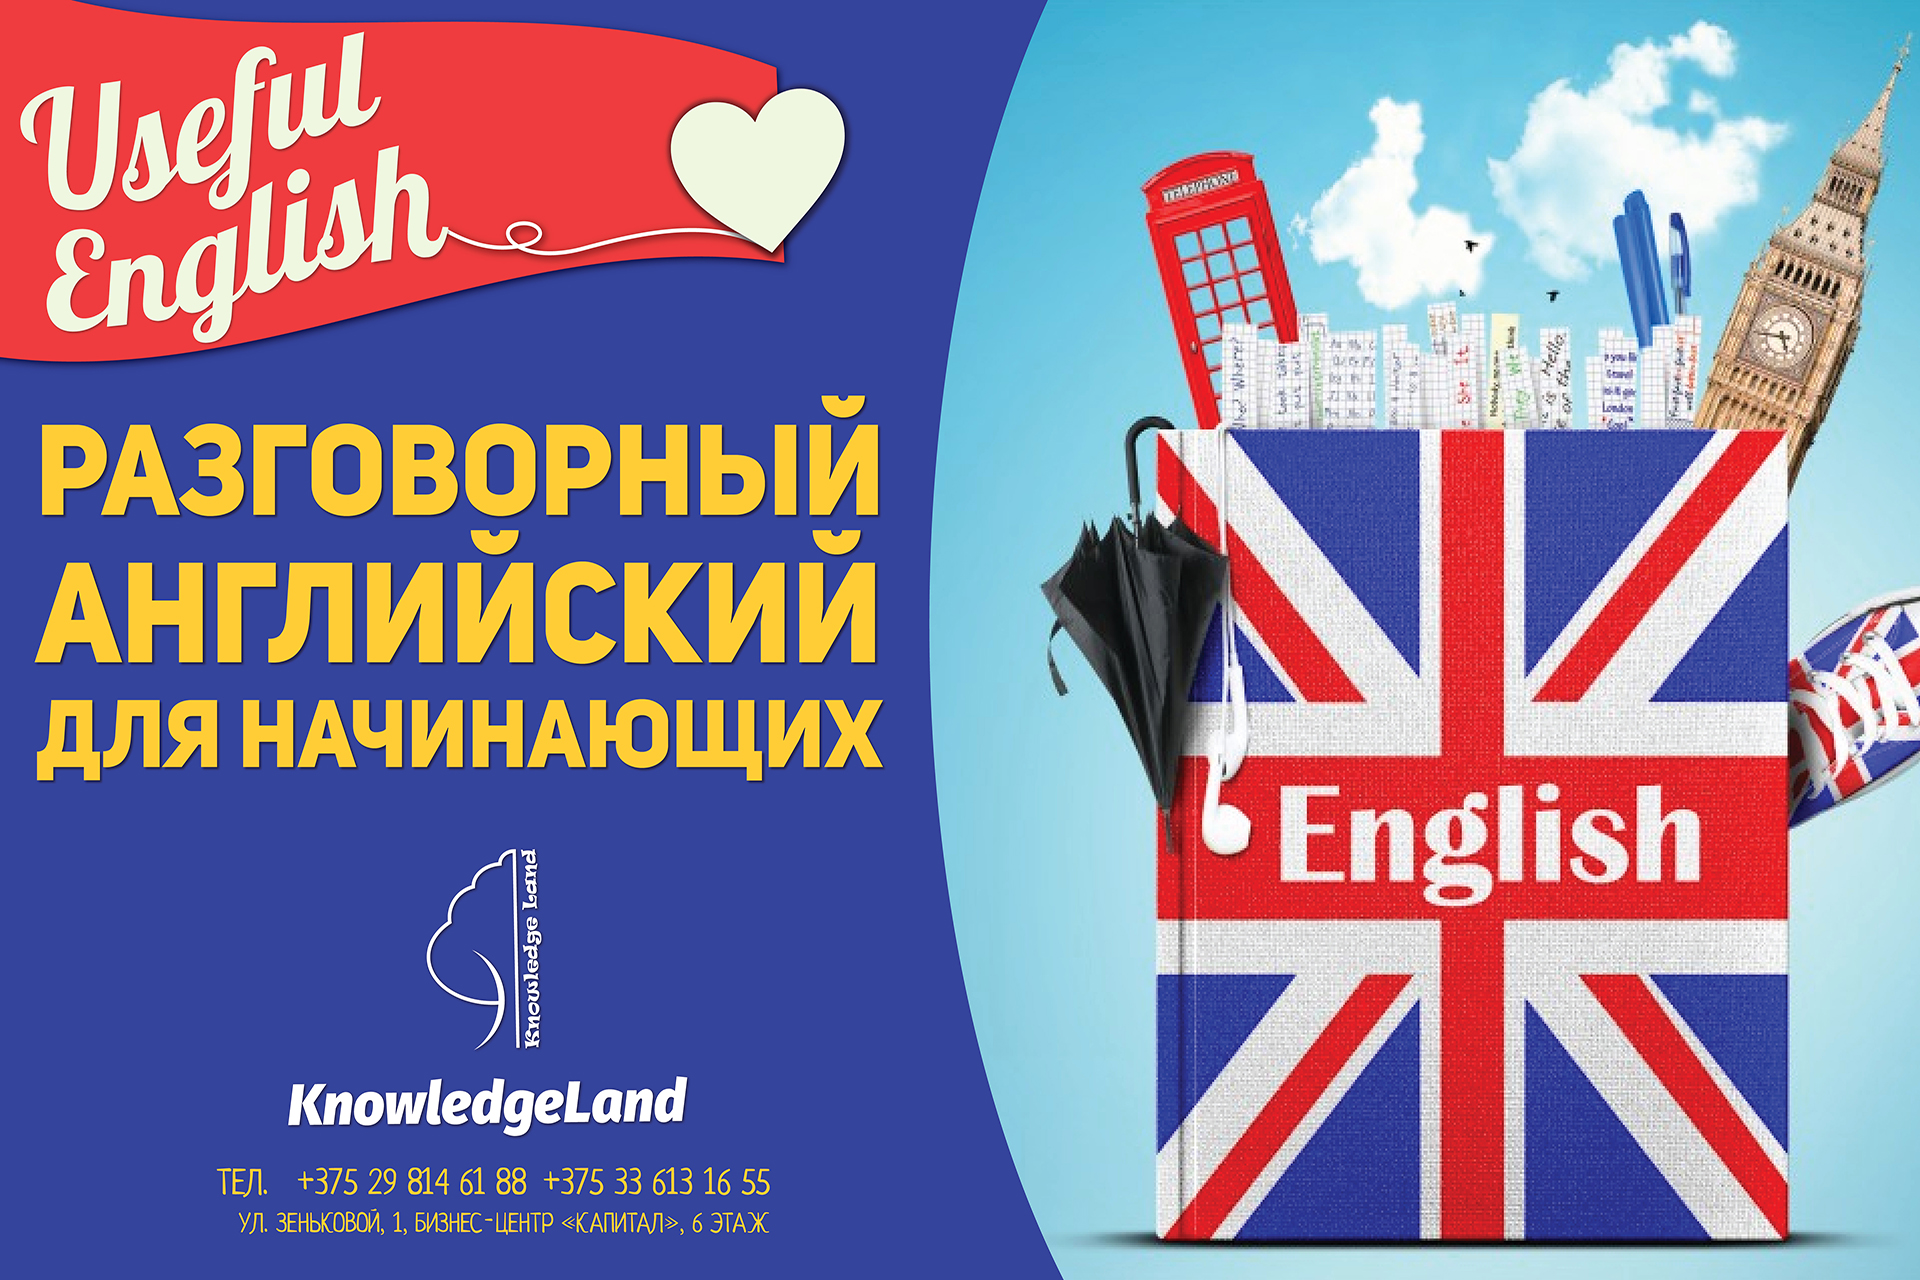 Английский язык энгельс. Реклама изучения английского языка. Учим английский. Выучить английский язык. Английский язык для начинающих.